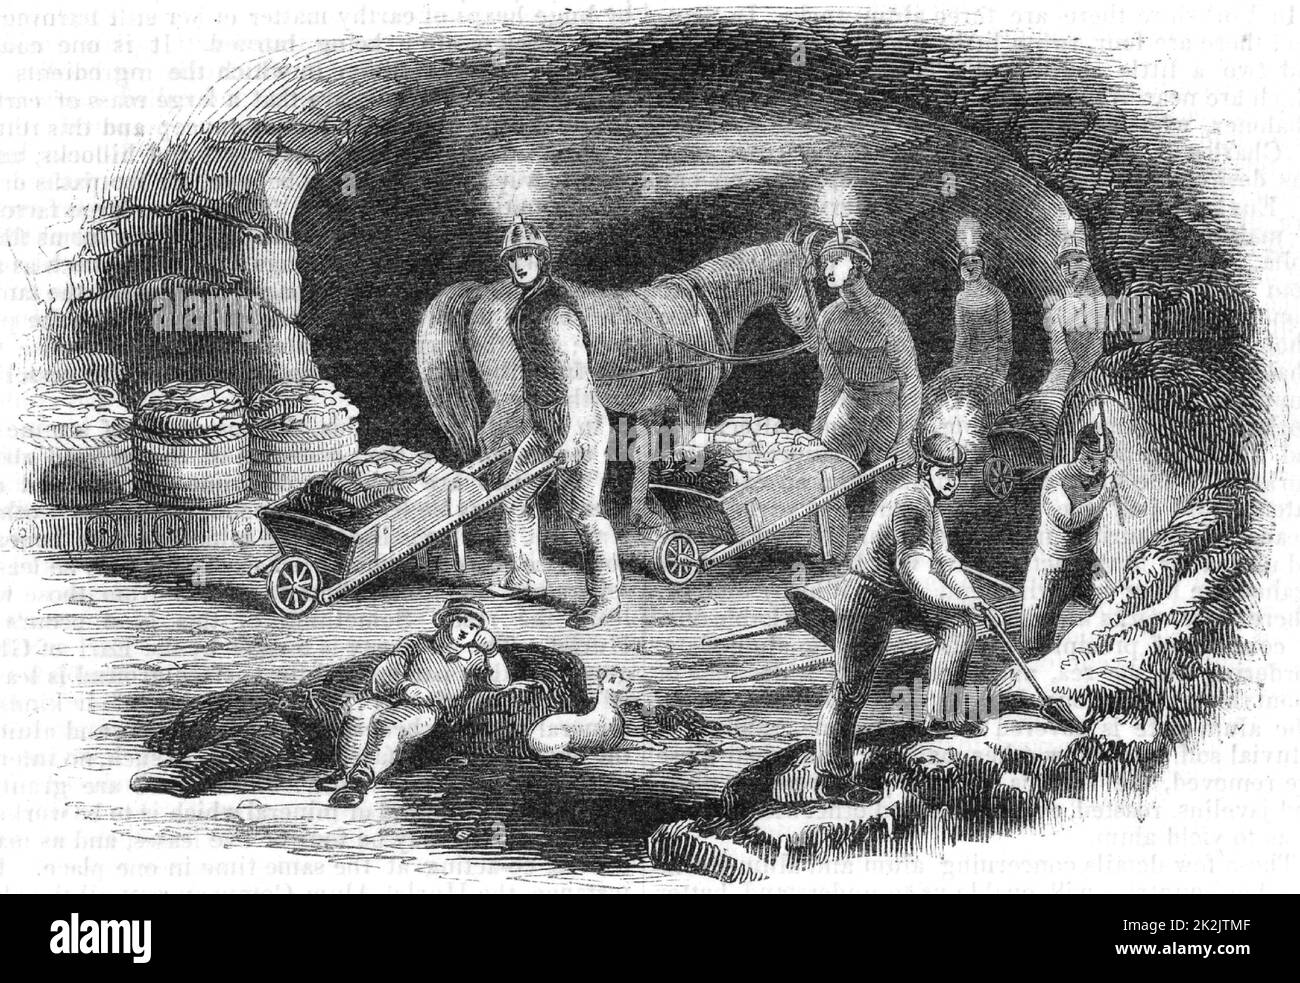 Die Hurlet-Alaummine in der Nähe von Glasgow, Schottland, zeigt Bergarbeiter, die Erz fördern. Das Licht wird durch Kerzen geliefert, die an ihren Helmen befestigt sind. Aus Dem „The Penny Magazine“ (London, Oktober 1843). Gravur. Stockfoto